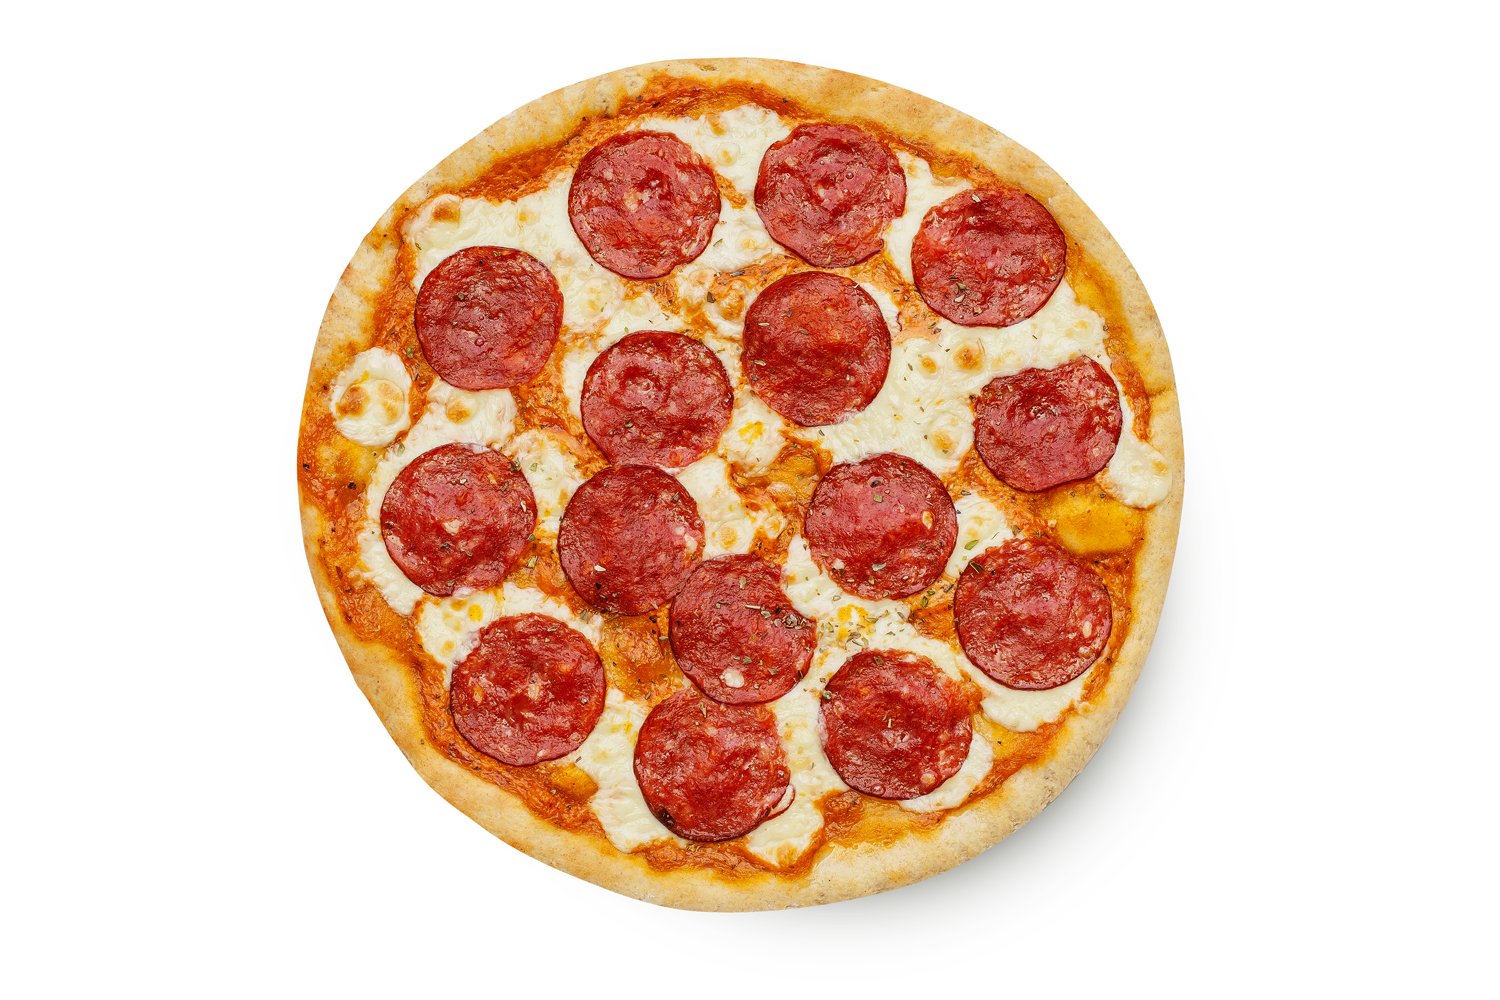 Лучшая пицца с копченой колбасой